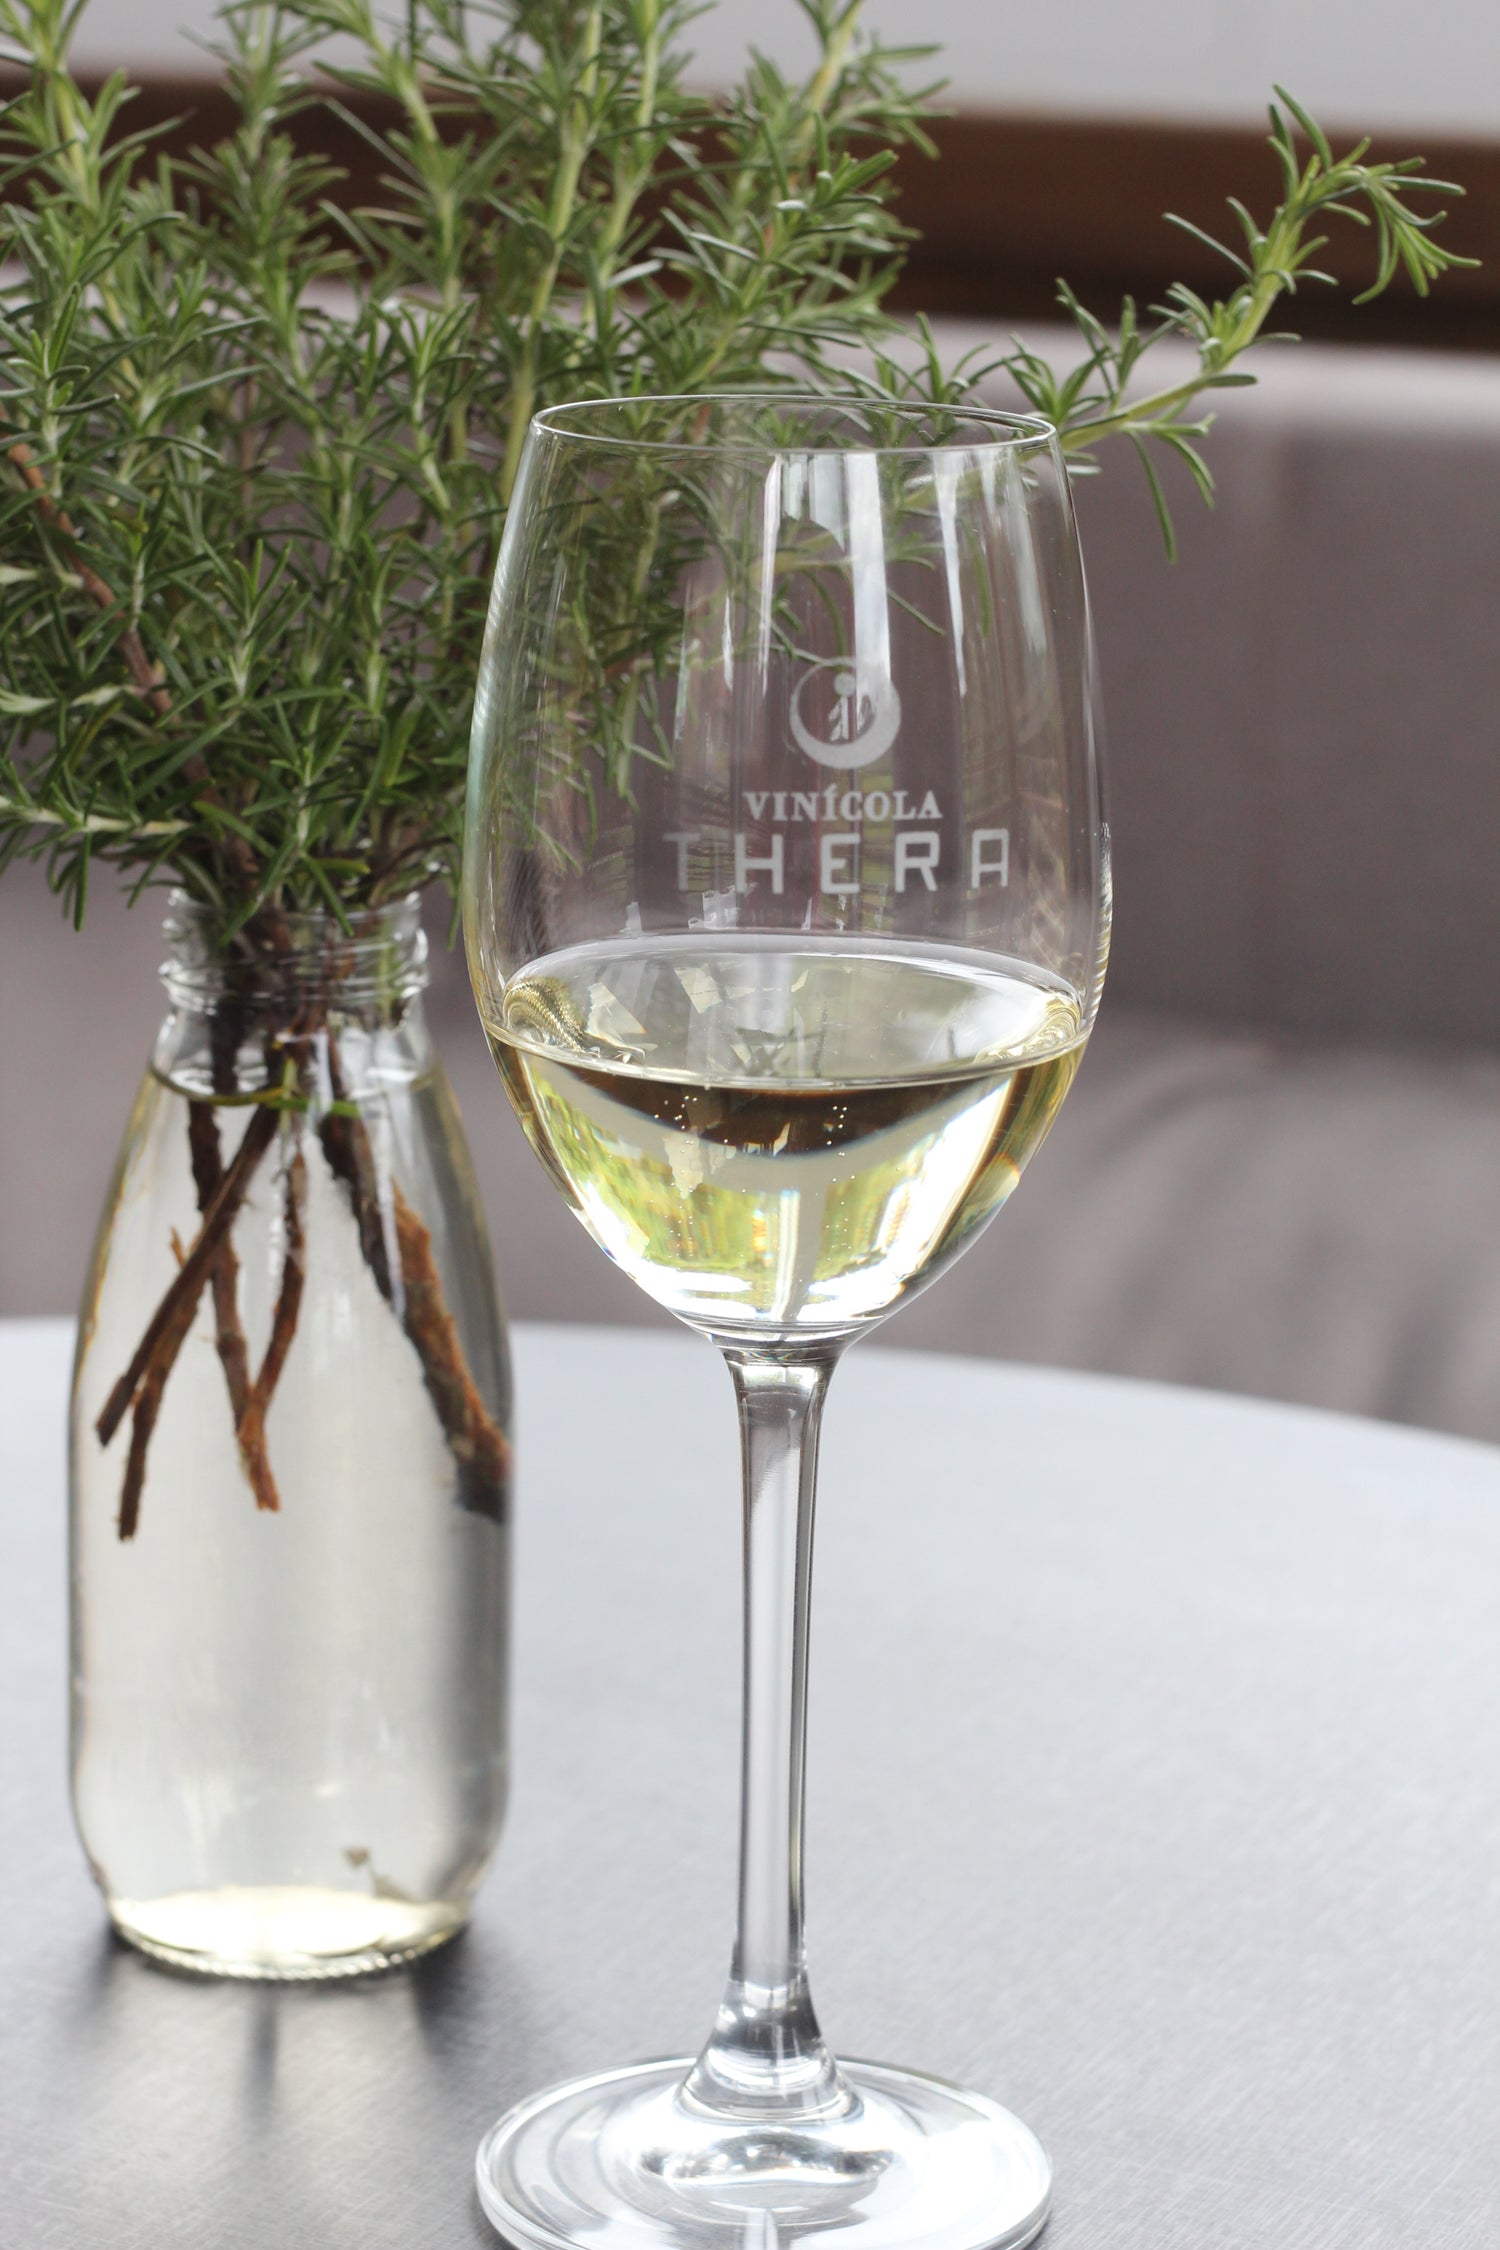 Saiba quais são os aromas herbáceos mais comuns nos vinhos brancos